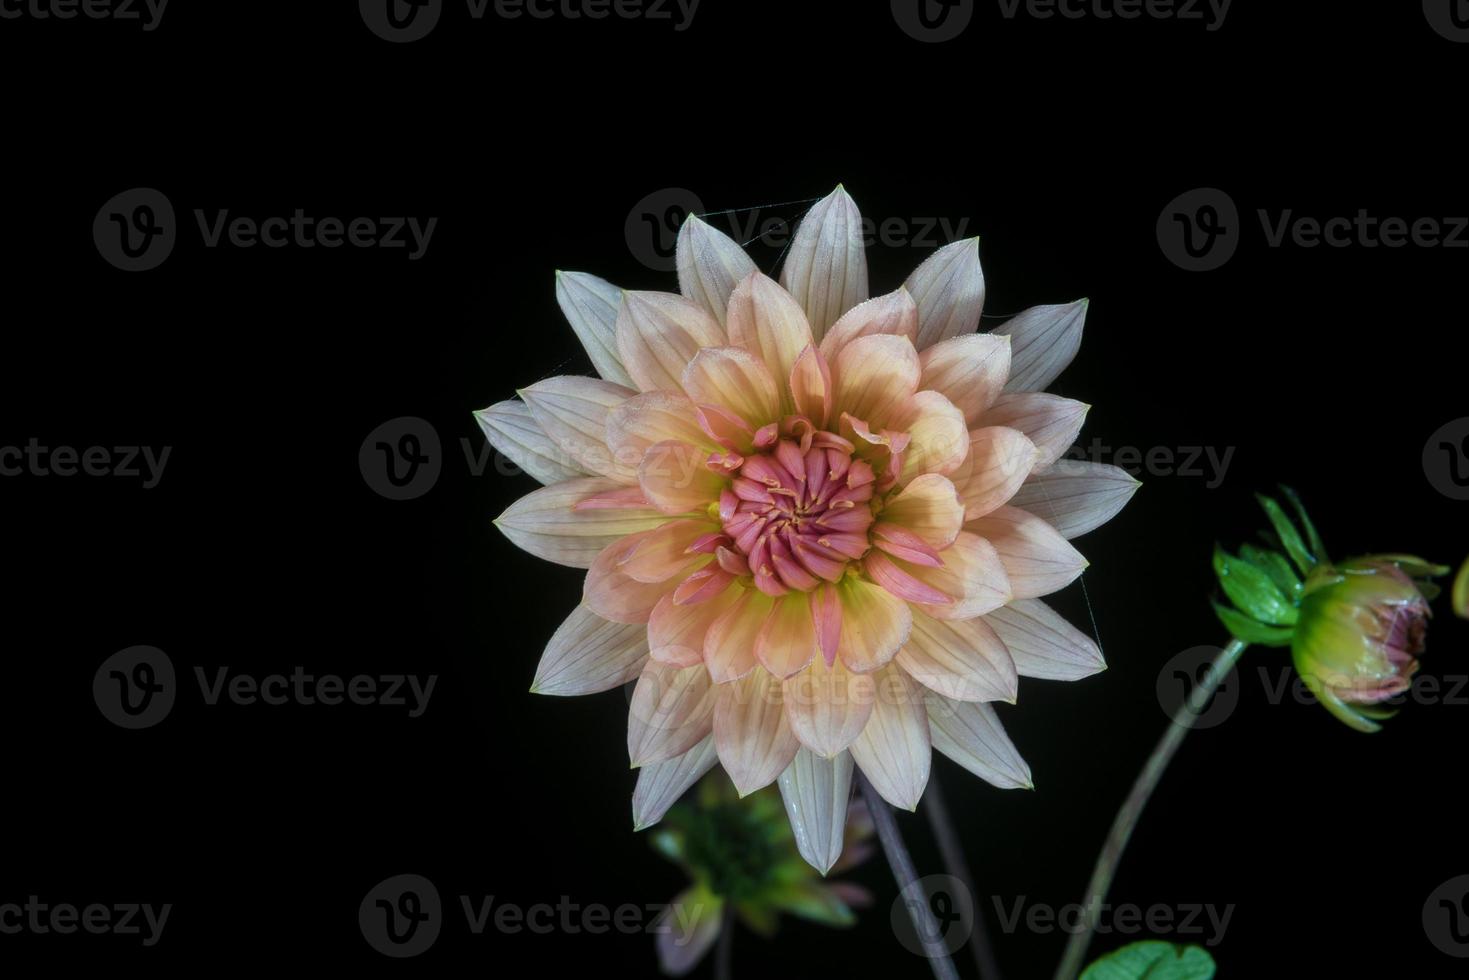 belle fleur de dahlia photo